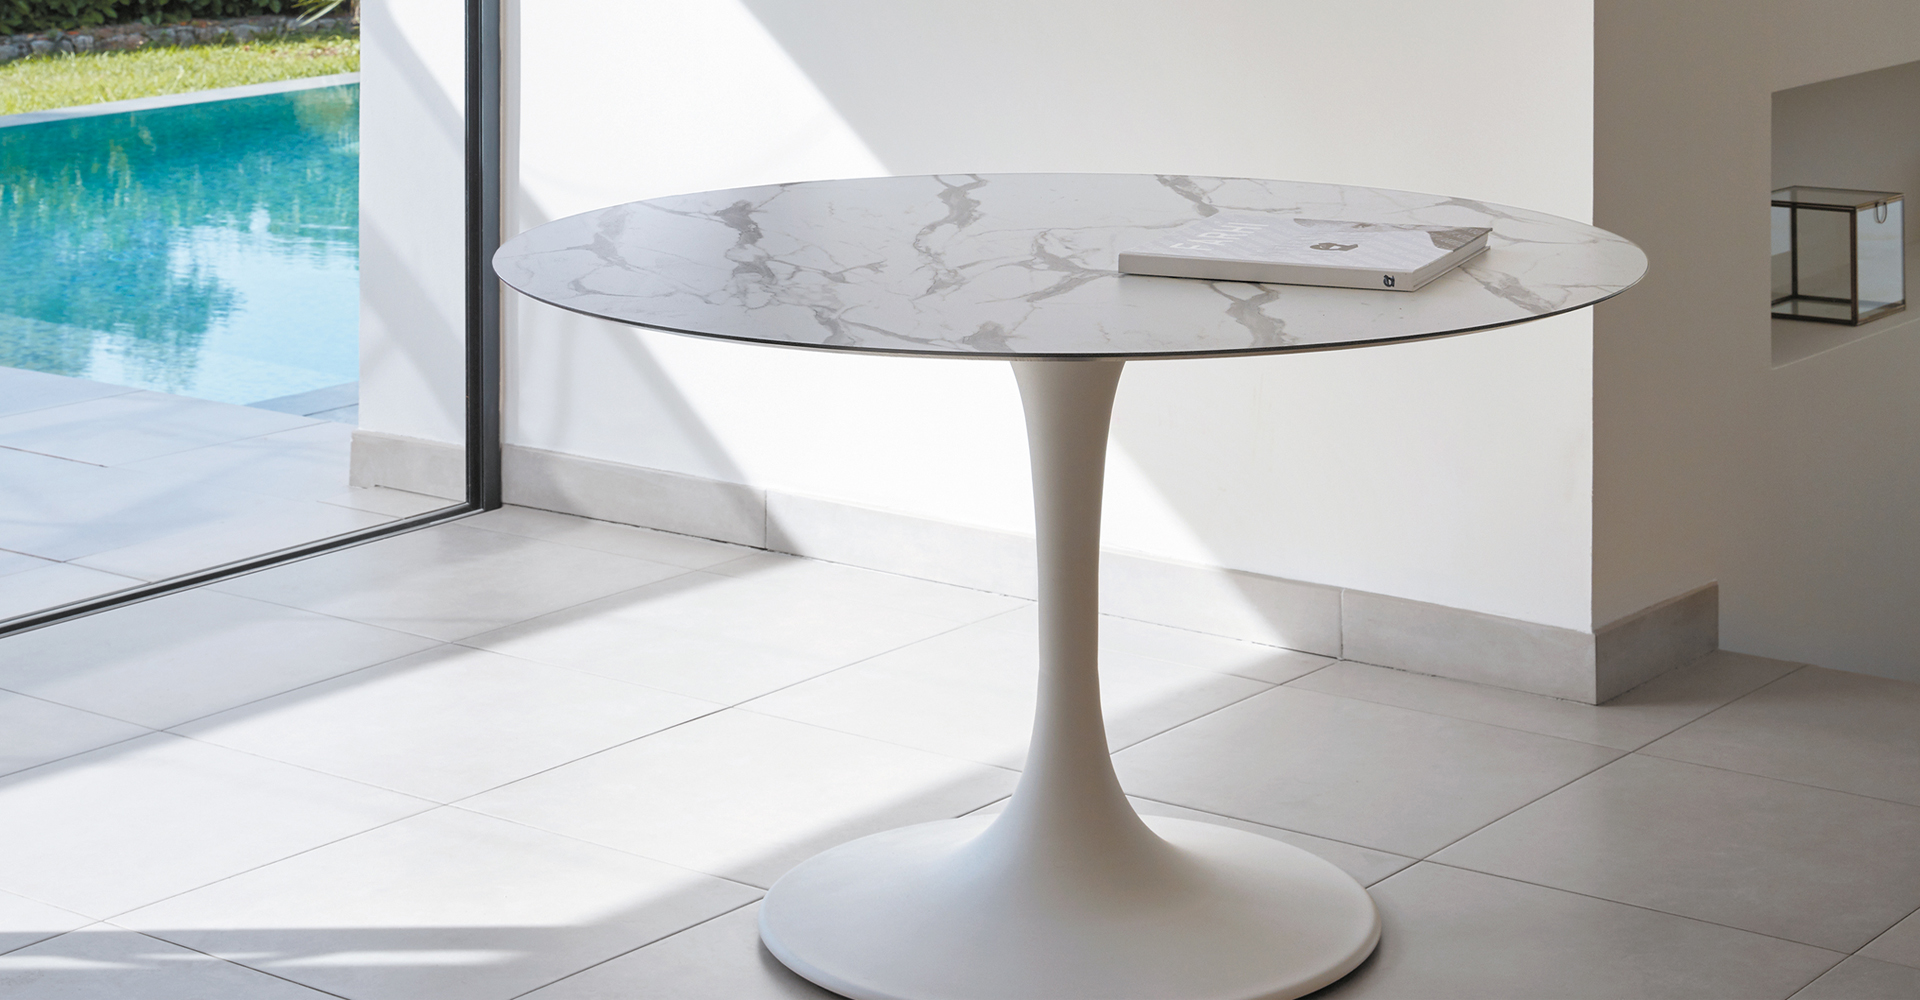 sifas-korol-table-140-marble-KORO3